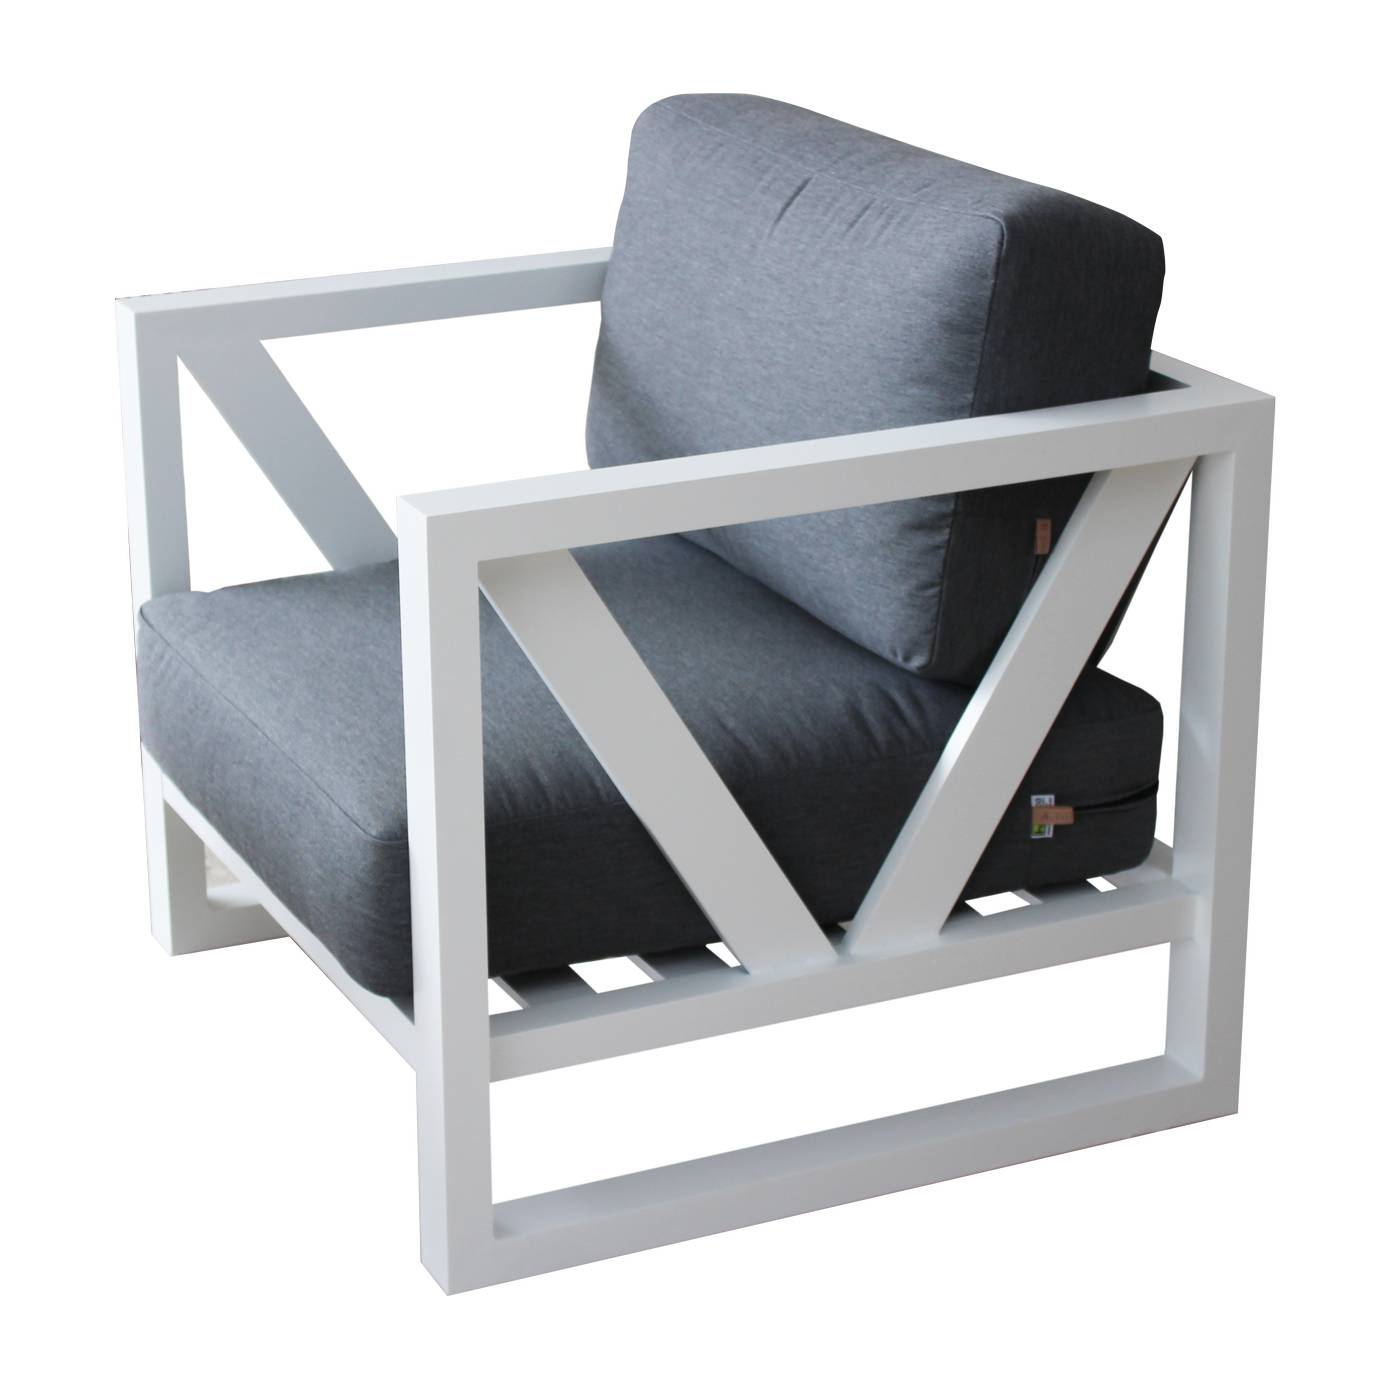 Lujoso sillón relax con cojines desenfundables. Robusta estructura aluminio de color blanco, antracita o champagne.